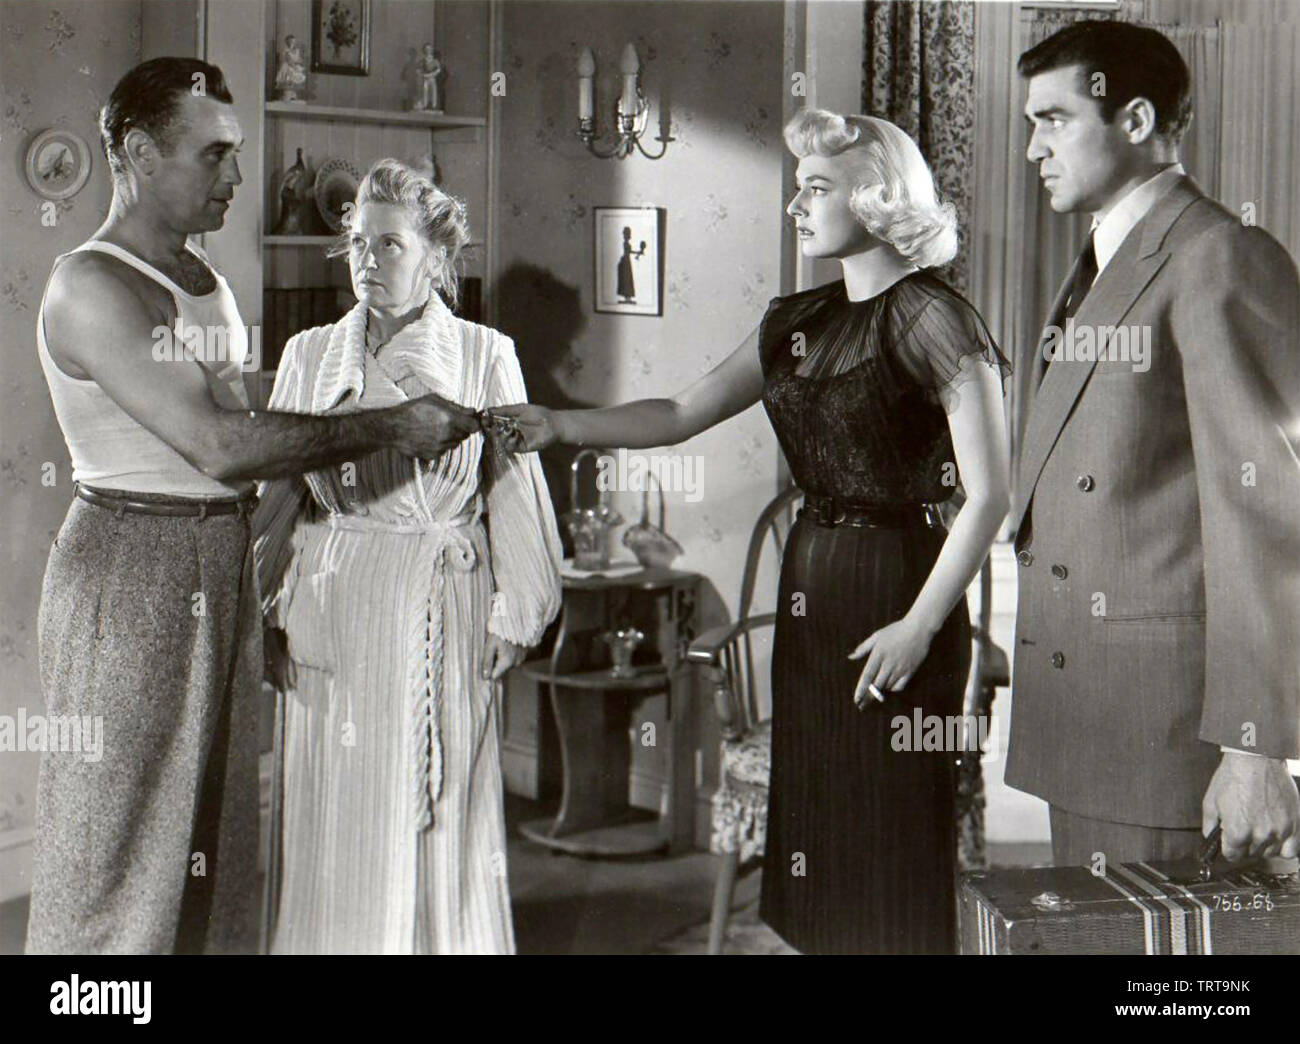 Mañana será otro día 1951 película de Warner Bros con Ruth Roman en derecho Foto de stock